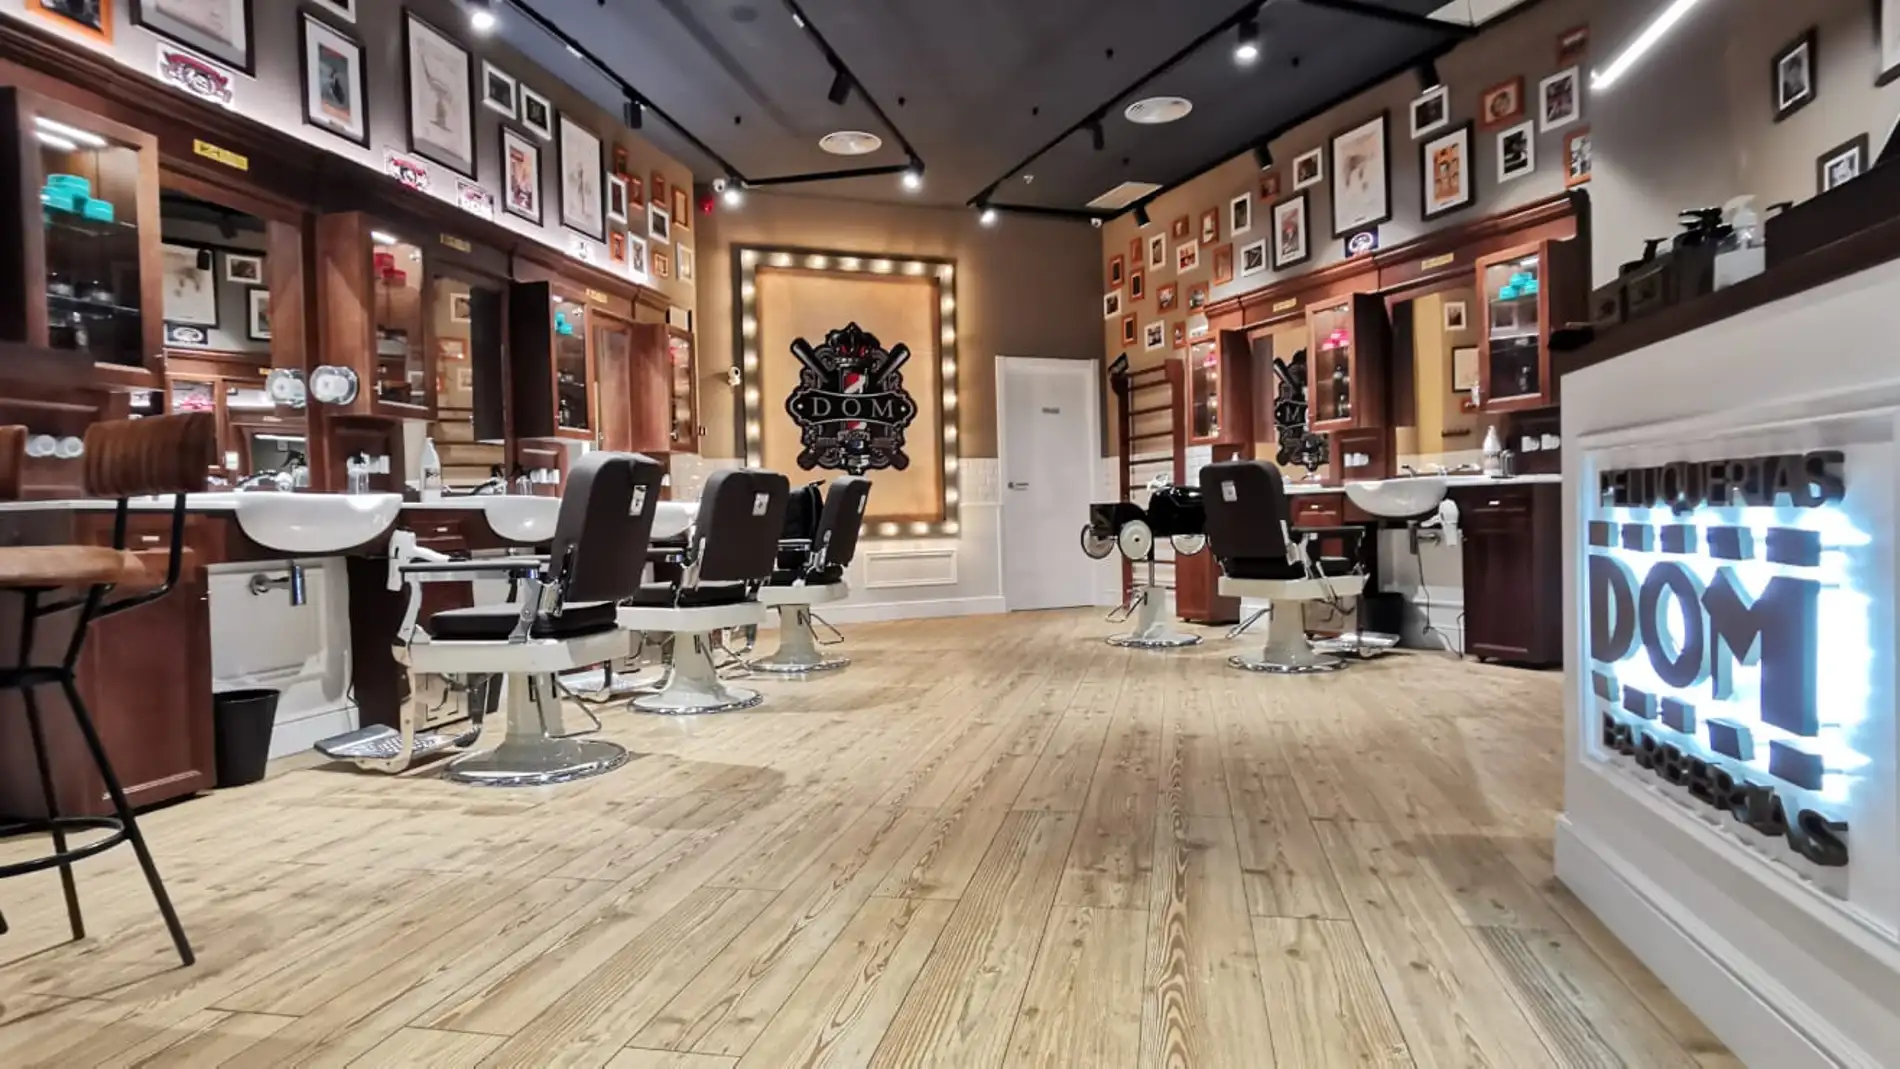 Larios Centro incorpora a su oferta a DOM Barberías, la peluquería vintage masculina de moda